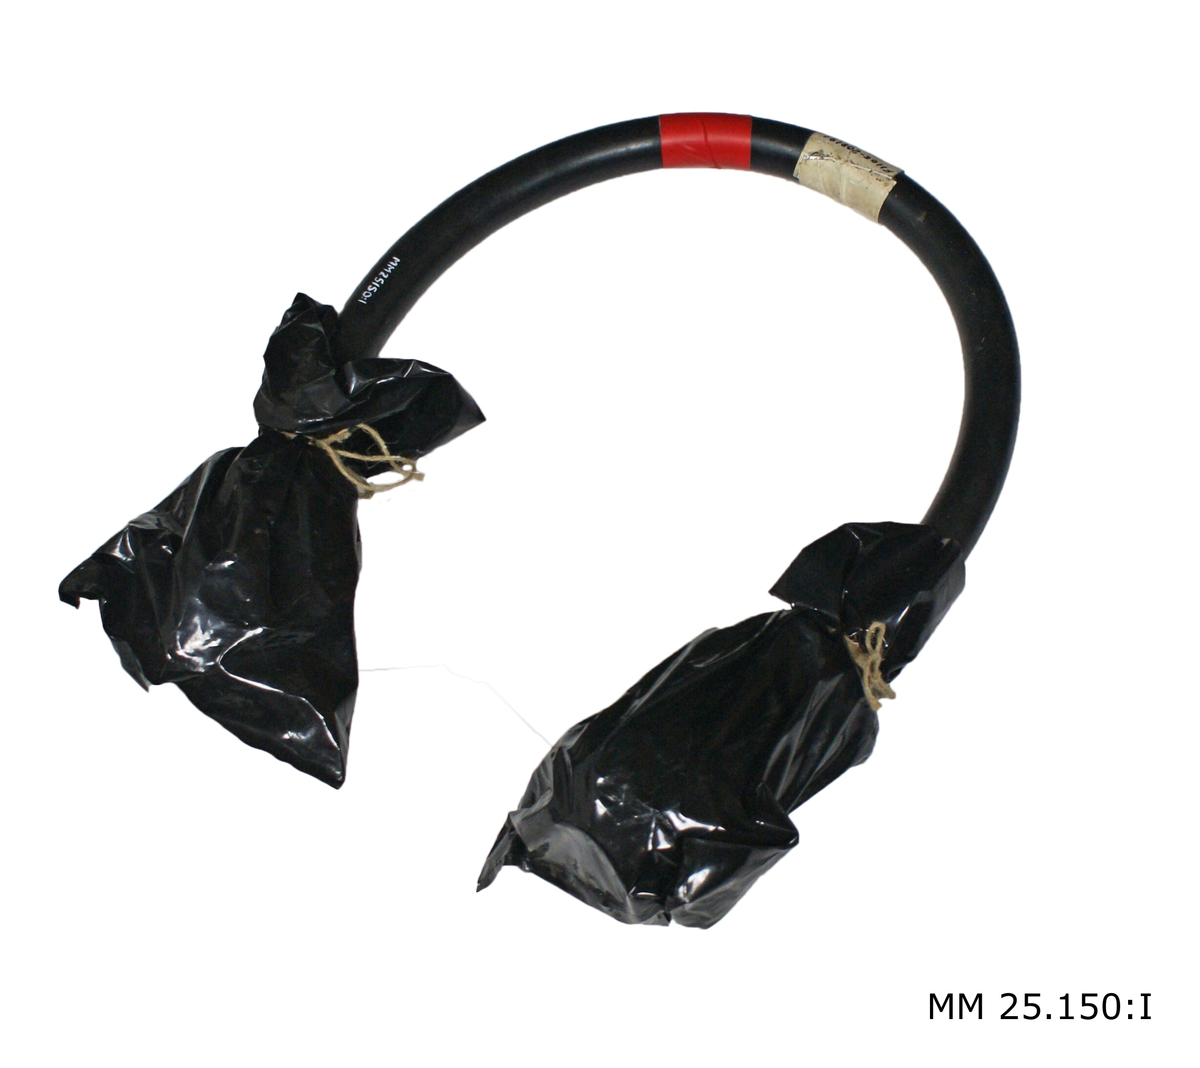 Svart gummiklädd kabel med metallkopplingsdon i ändarna. Mitt på sitter papperstejpbit lind med tuschtext: "F1105-208191 Kopplingskabel 3628-001". Kopplingskontakterna är inklädda i plastpåsar av svart plast som är förslutna med rep.